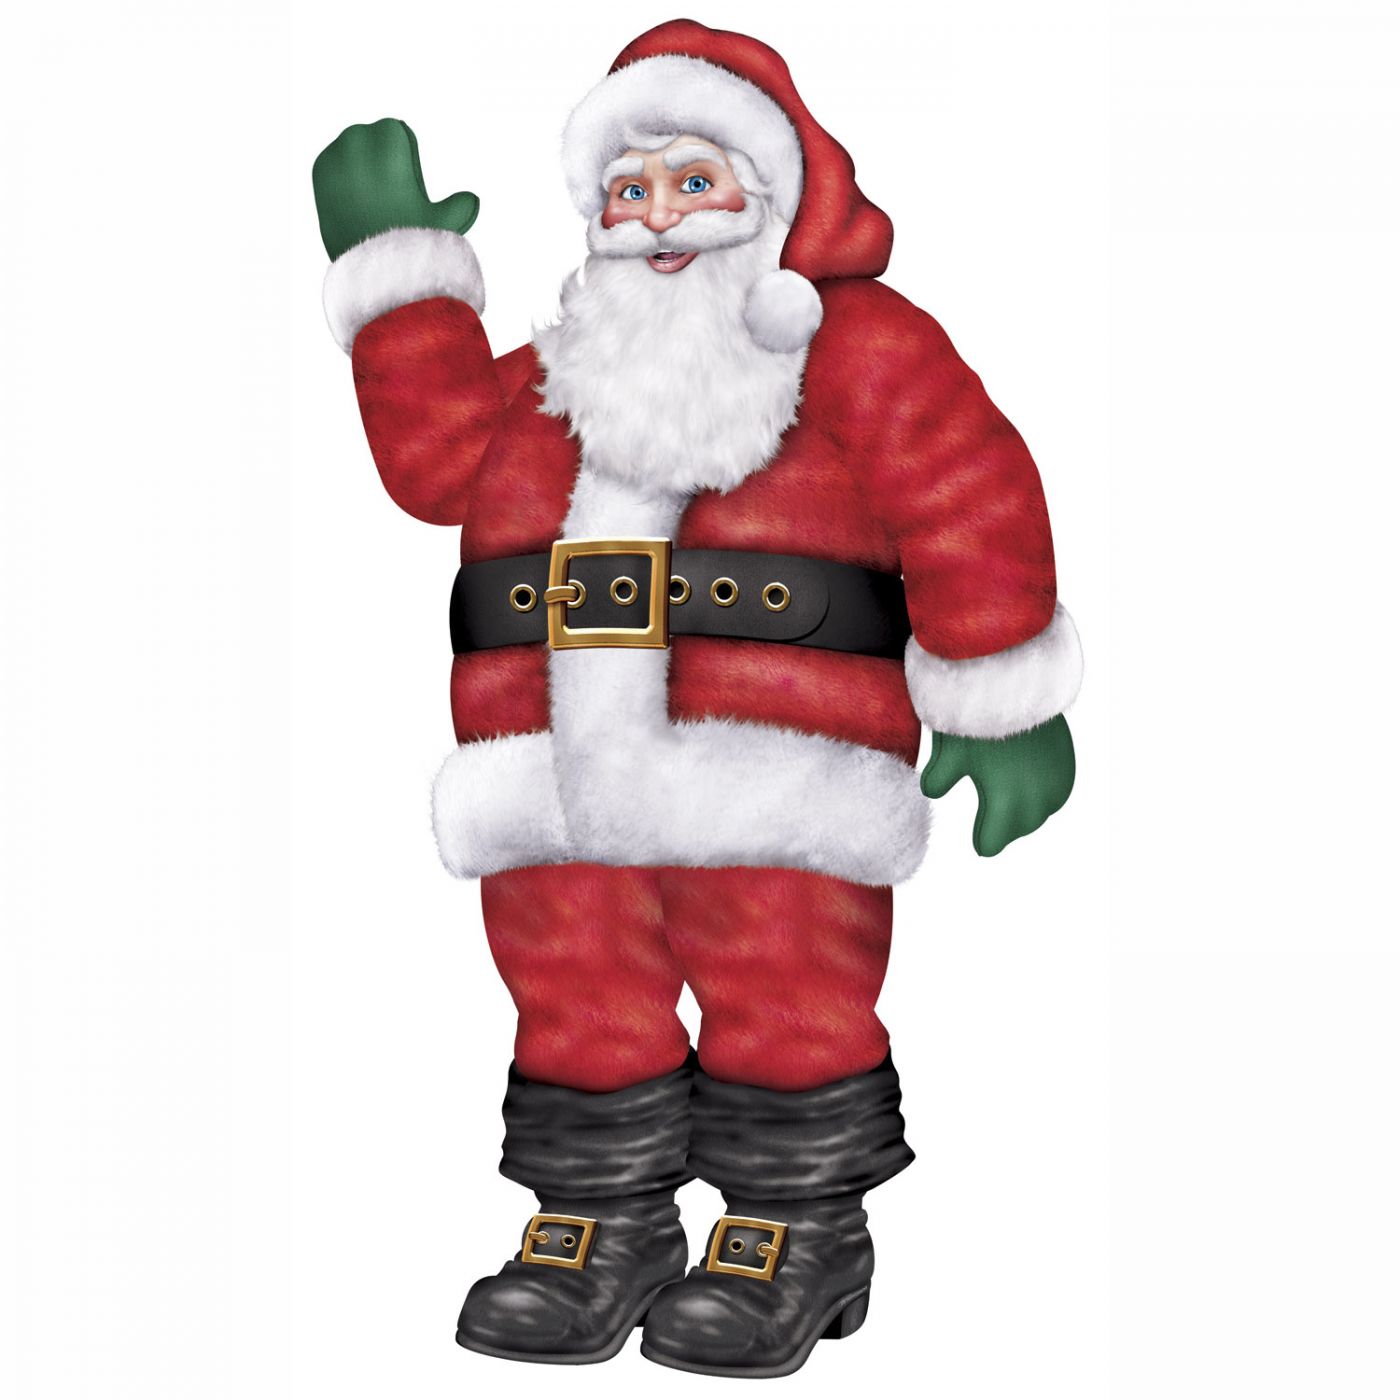 Jointed Santa image